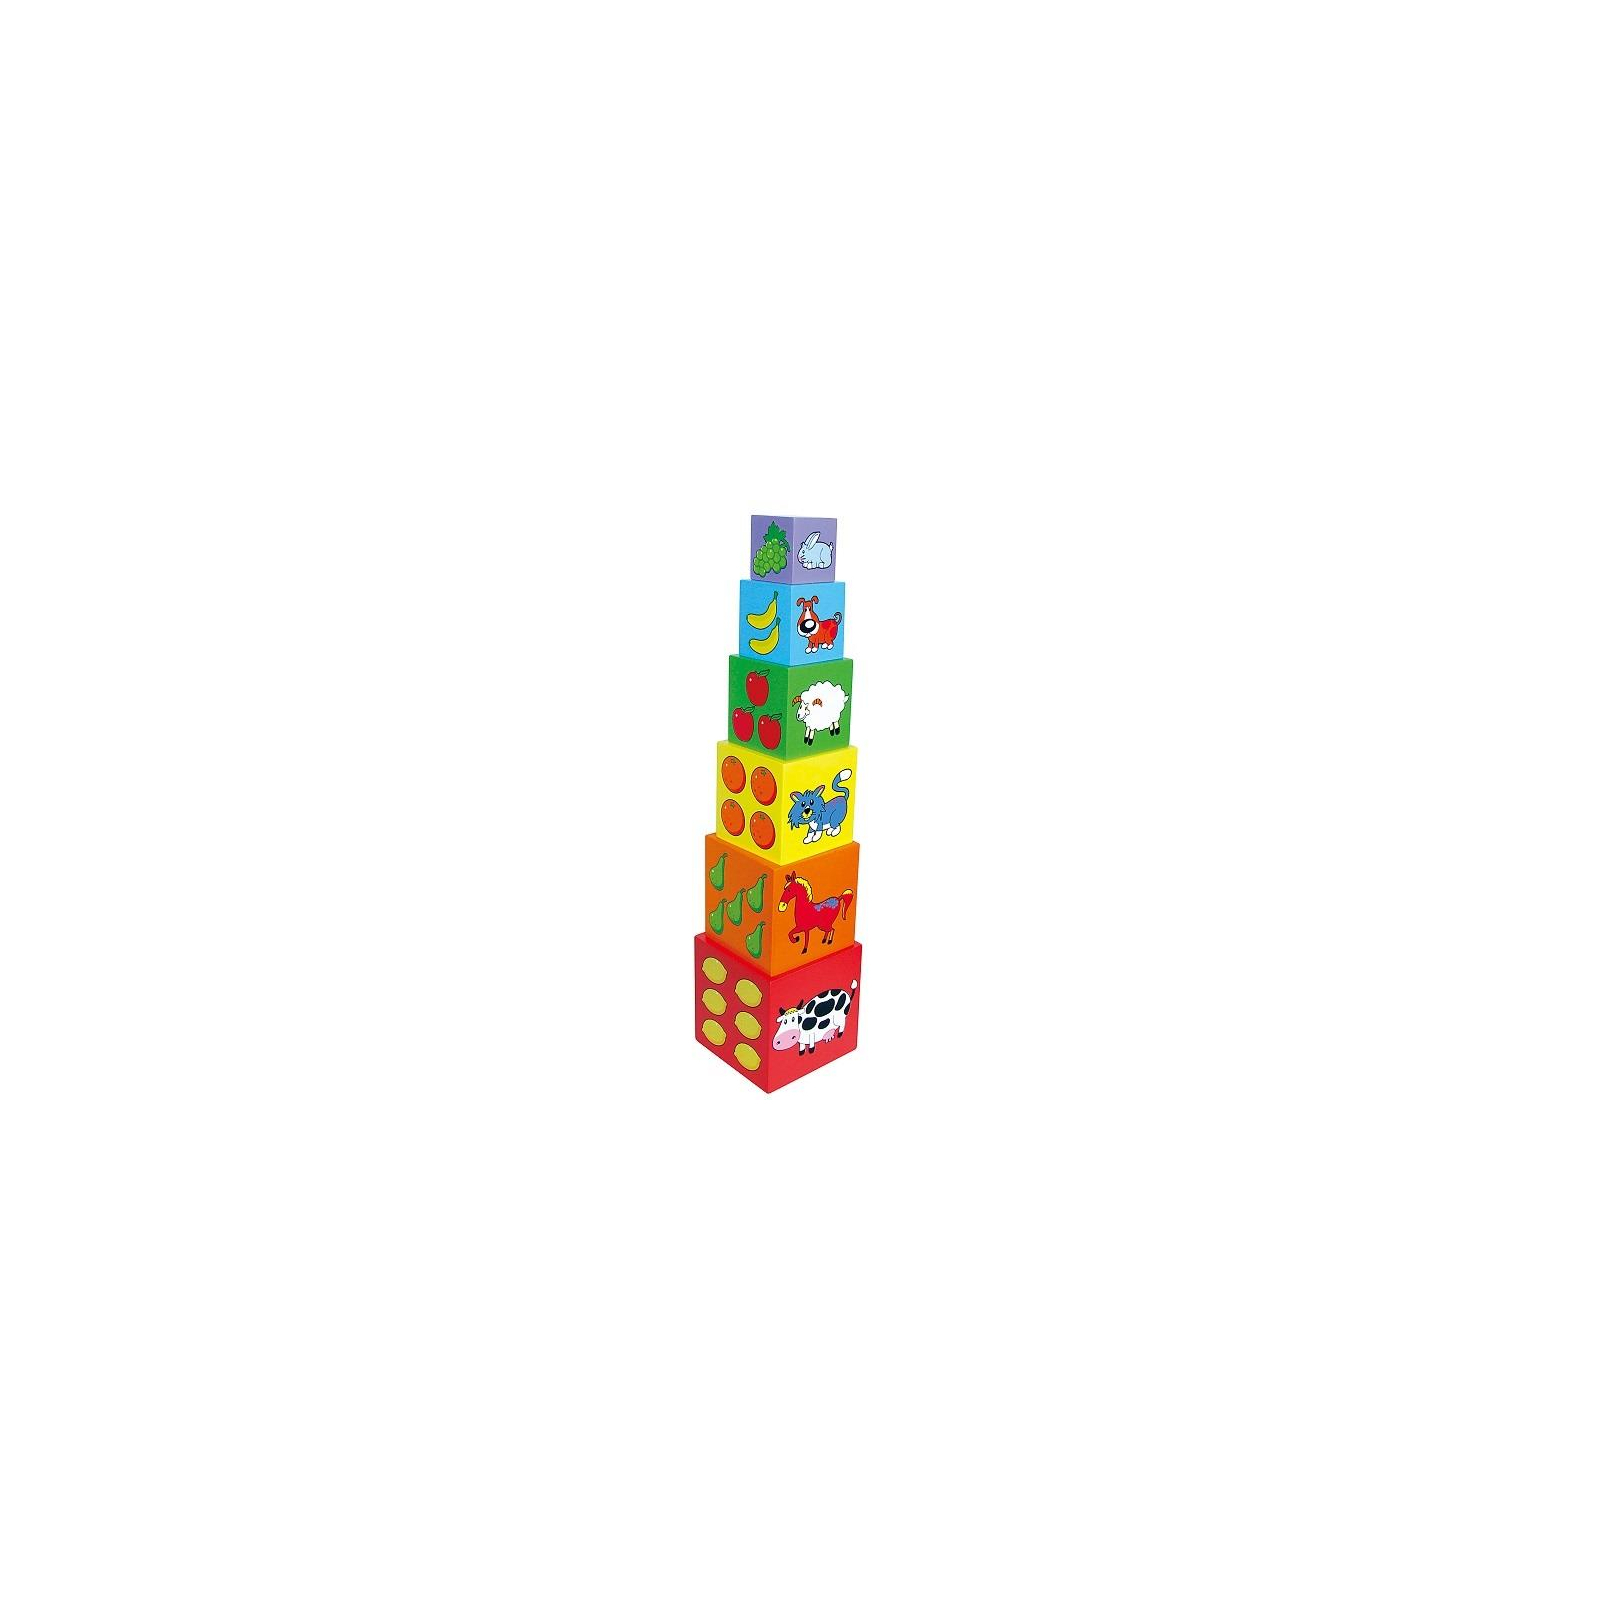 Кубики Viga Toys Пирамидка (59461) изображение 2